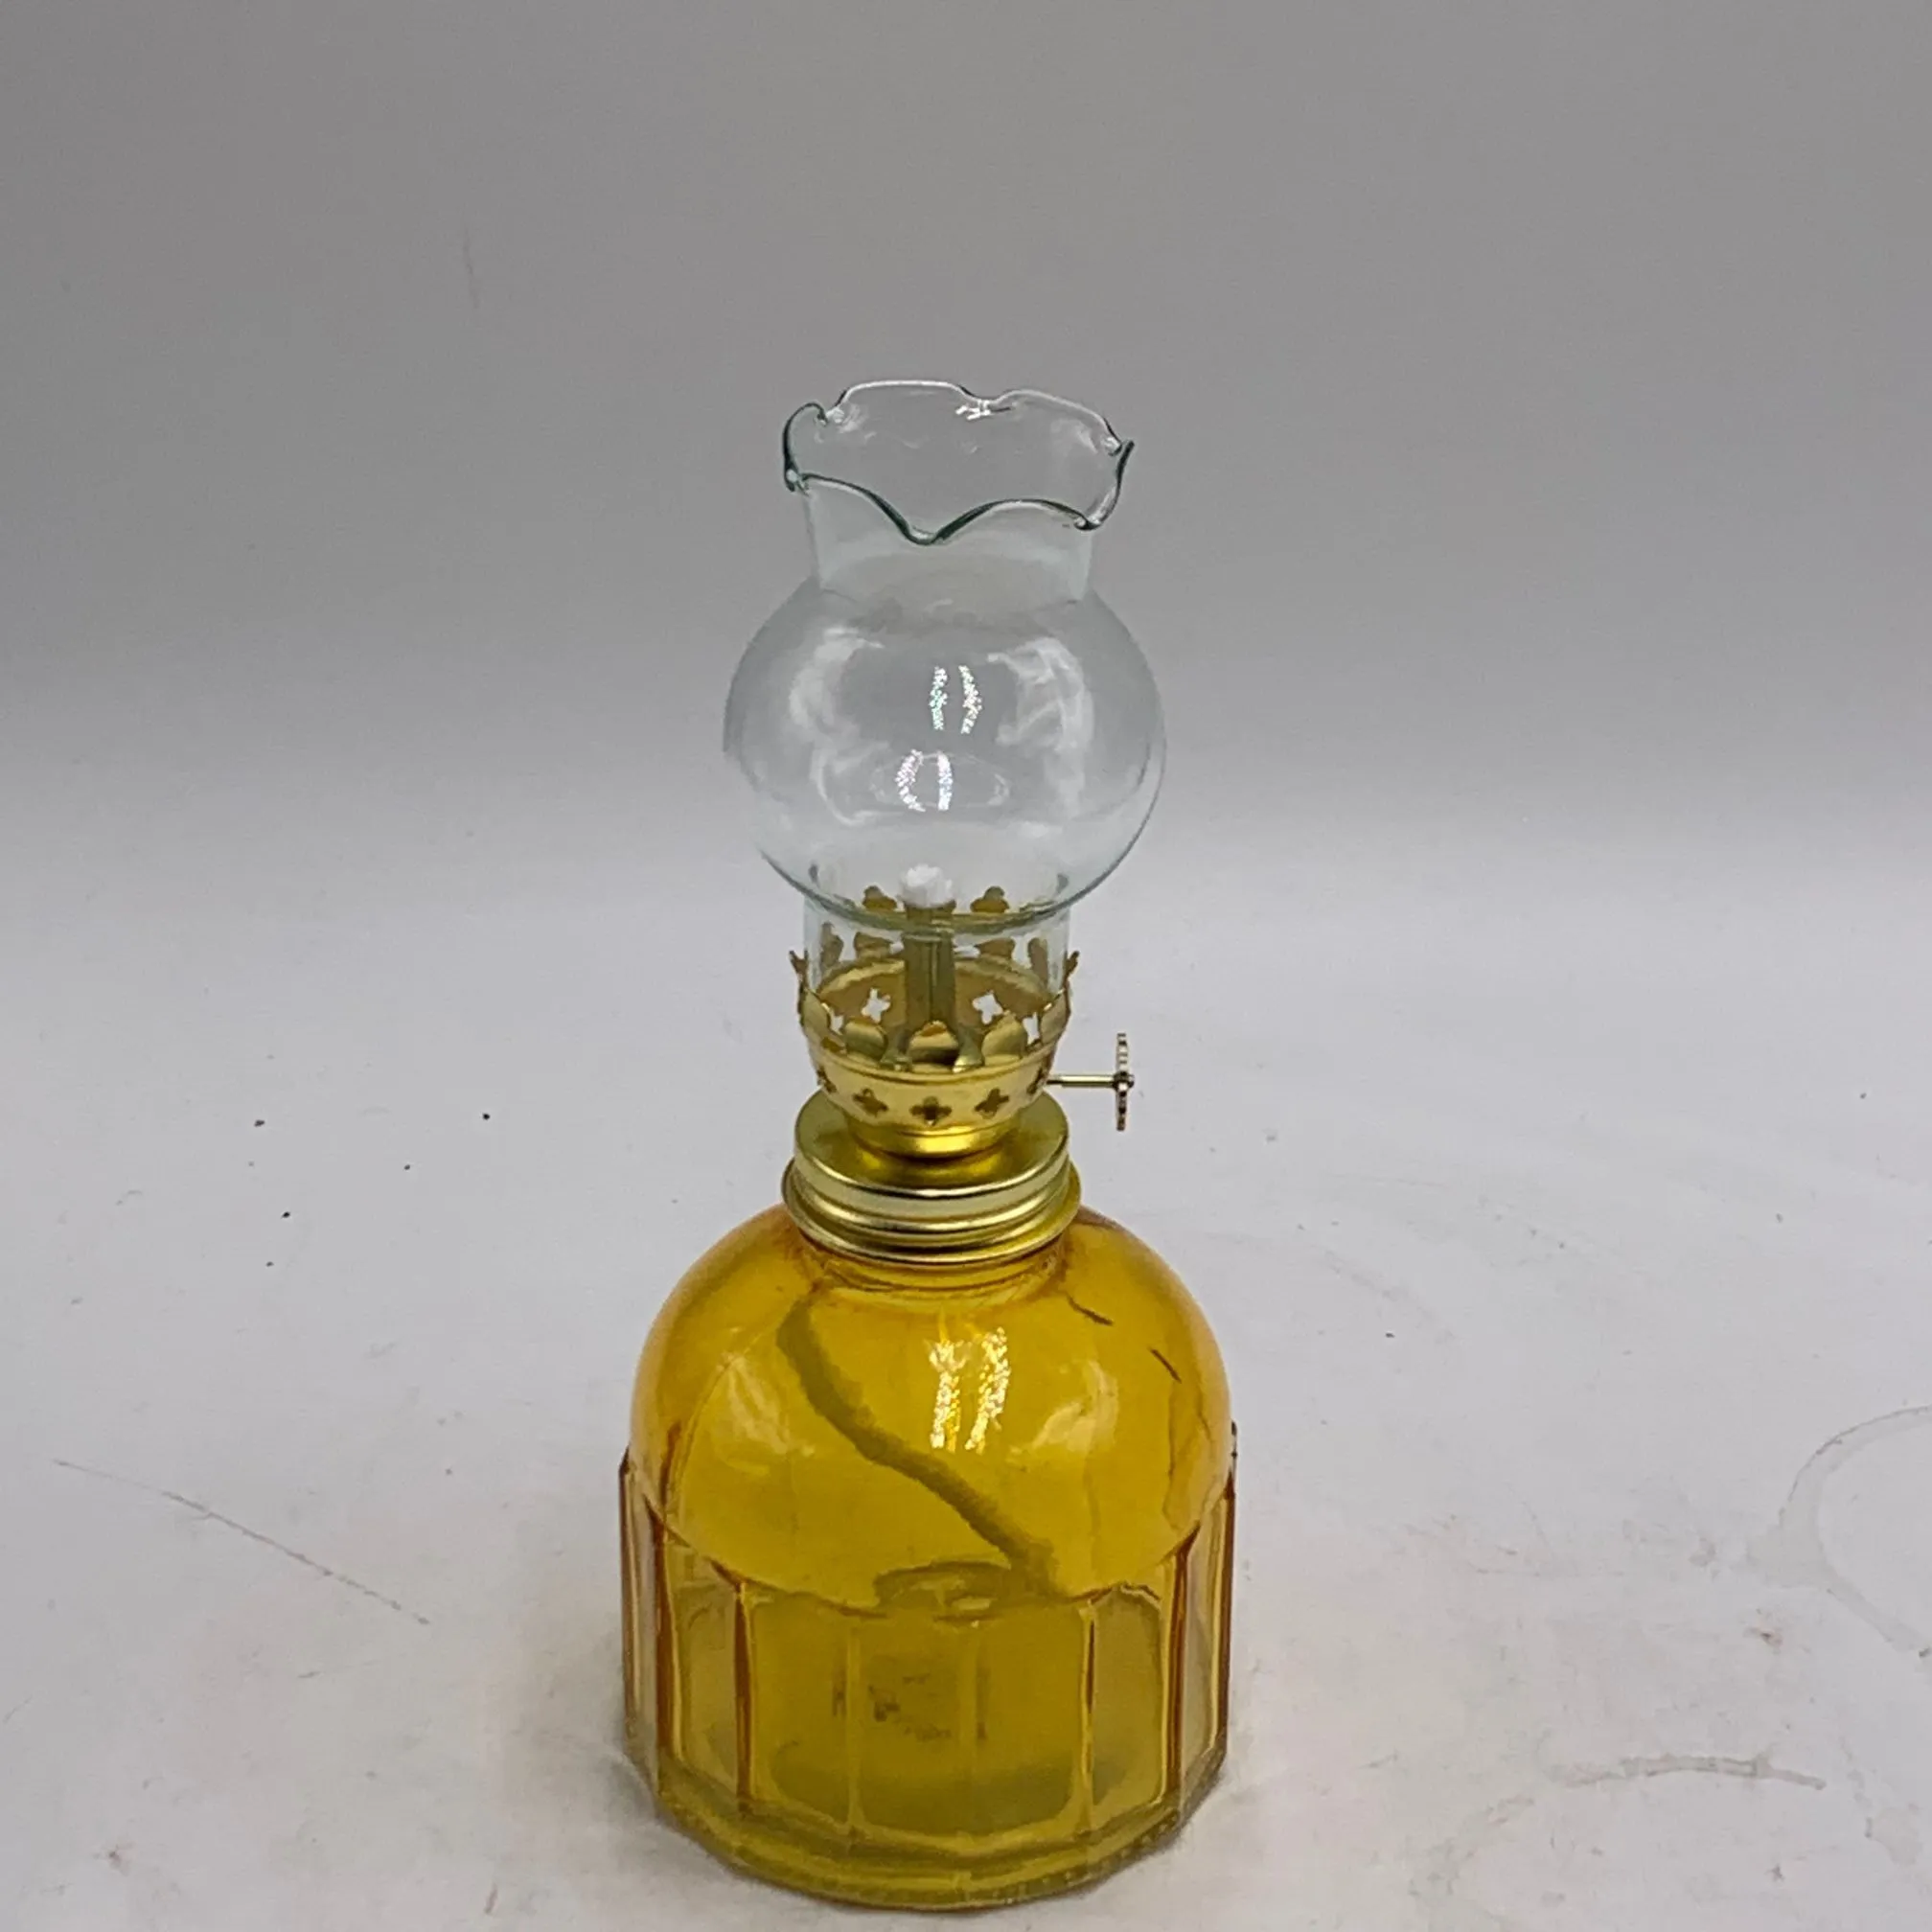 3 шт. стандартная керосиновая лампа для горелки, стеклянный держатель масляной лампы на заказ